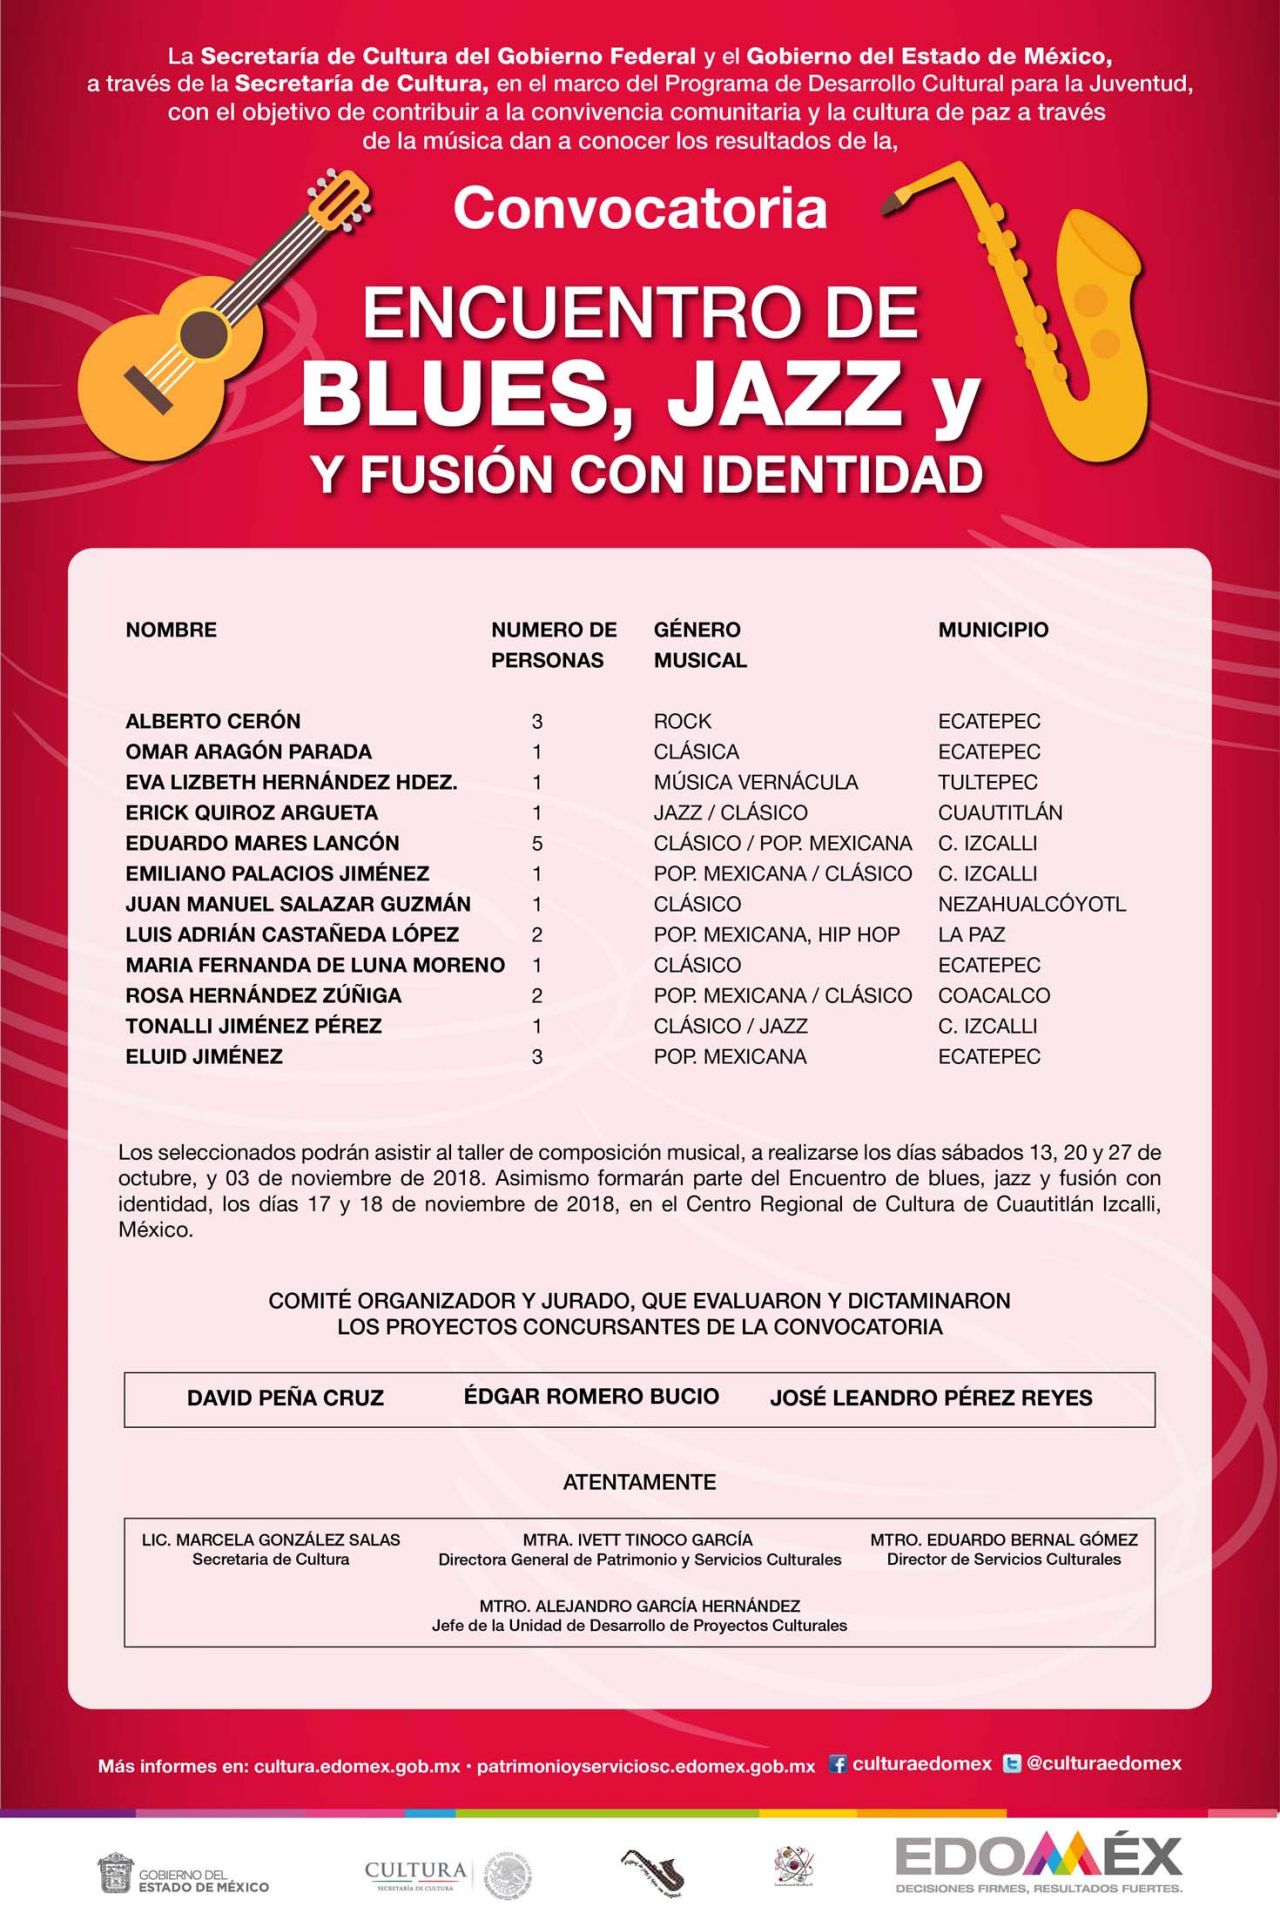 Eligen ganadores de la convocatoria "encuentro de blues, jazz y fusión con identidad 